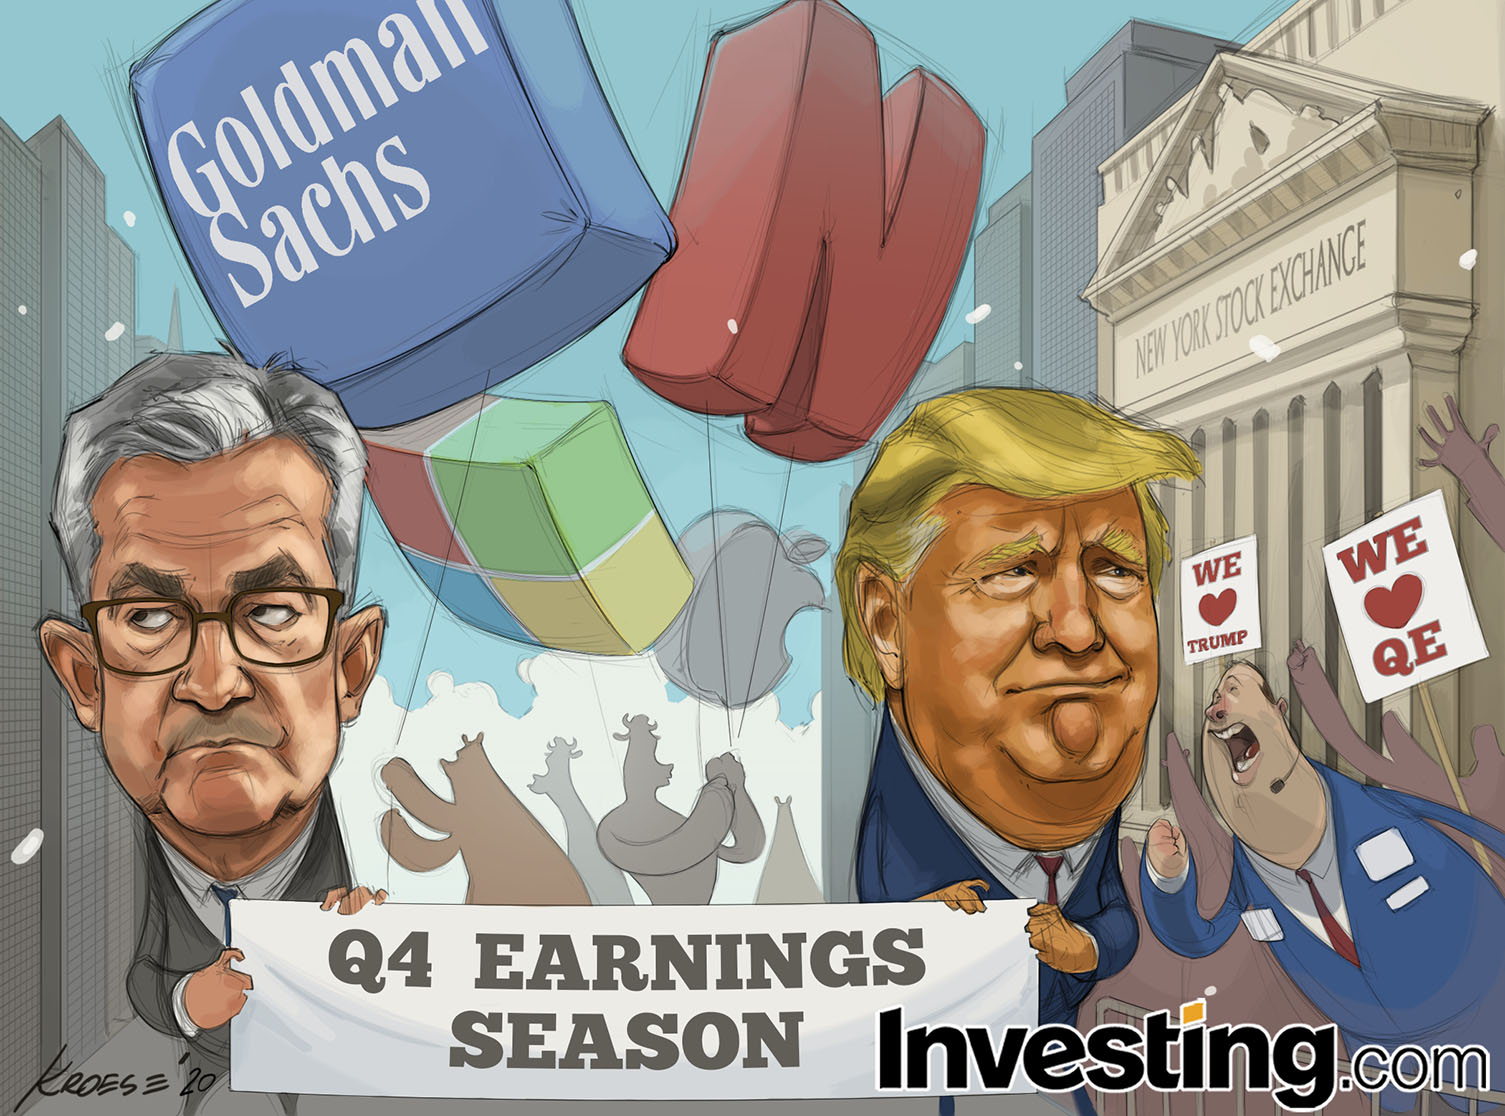 Temporada dos balanços chega à Wall Street com ínicio da temporada de resultados do 4º trimestre